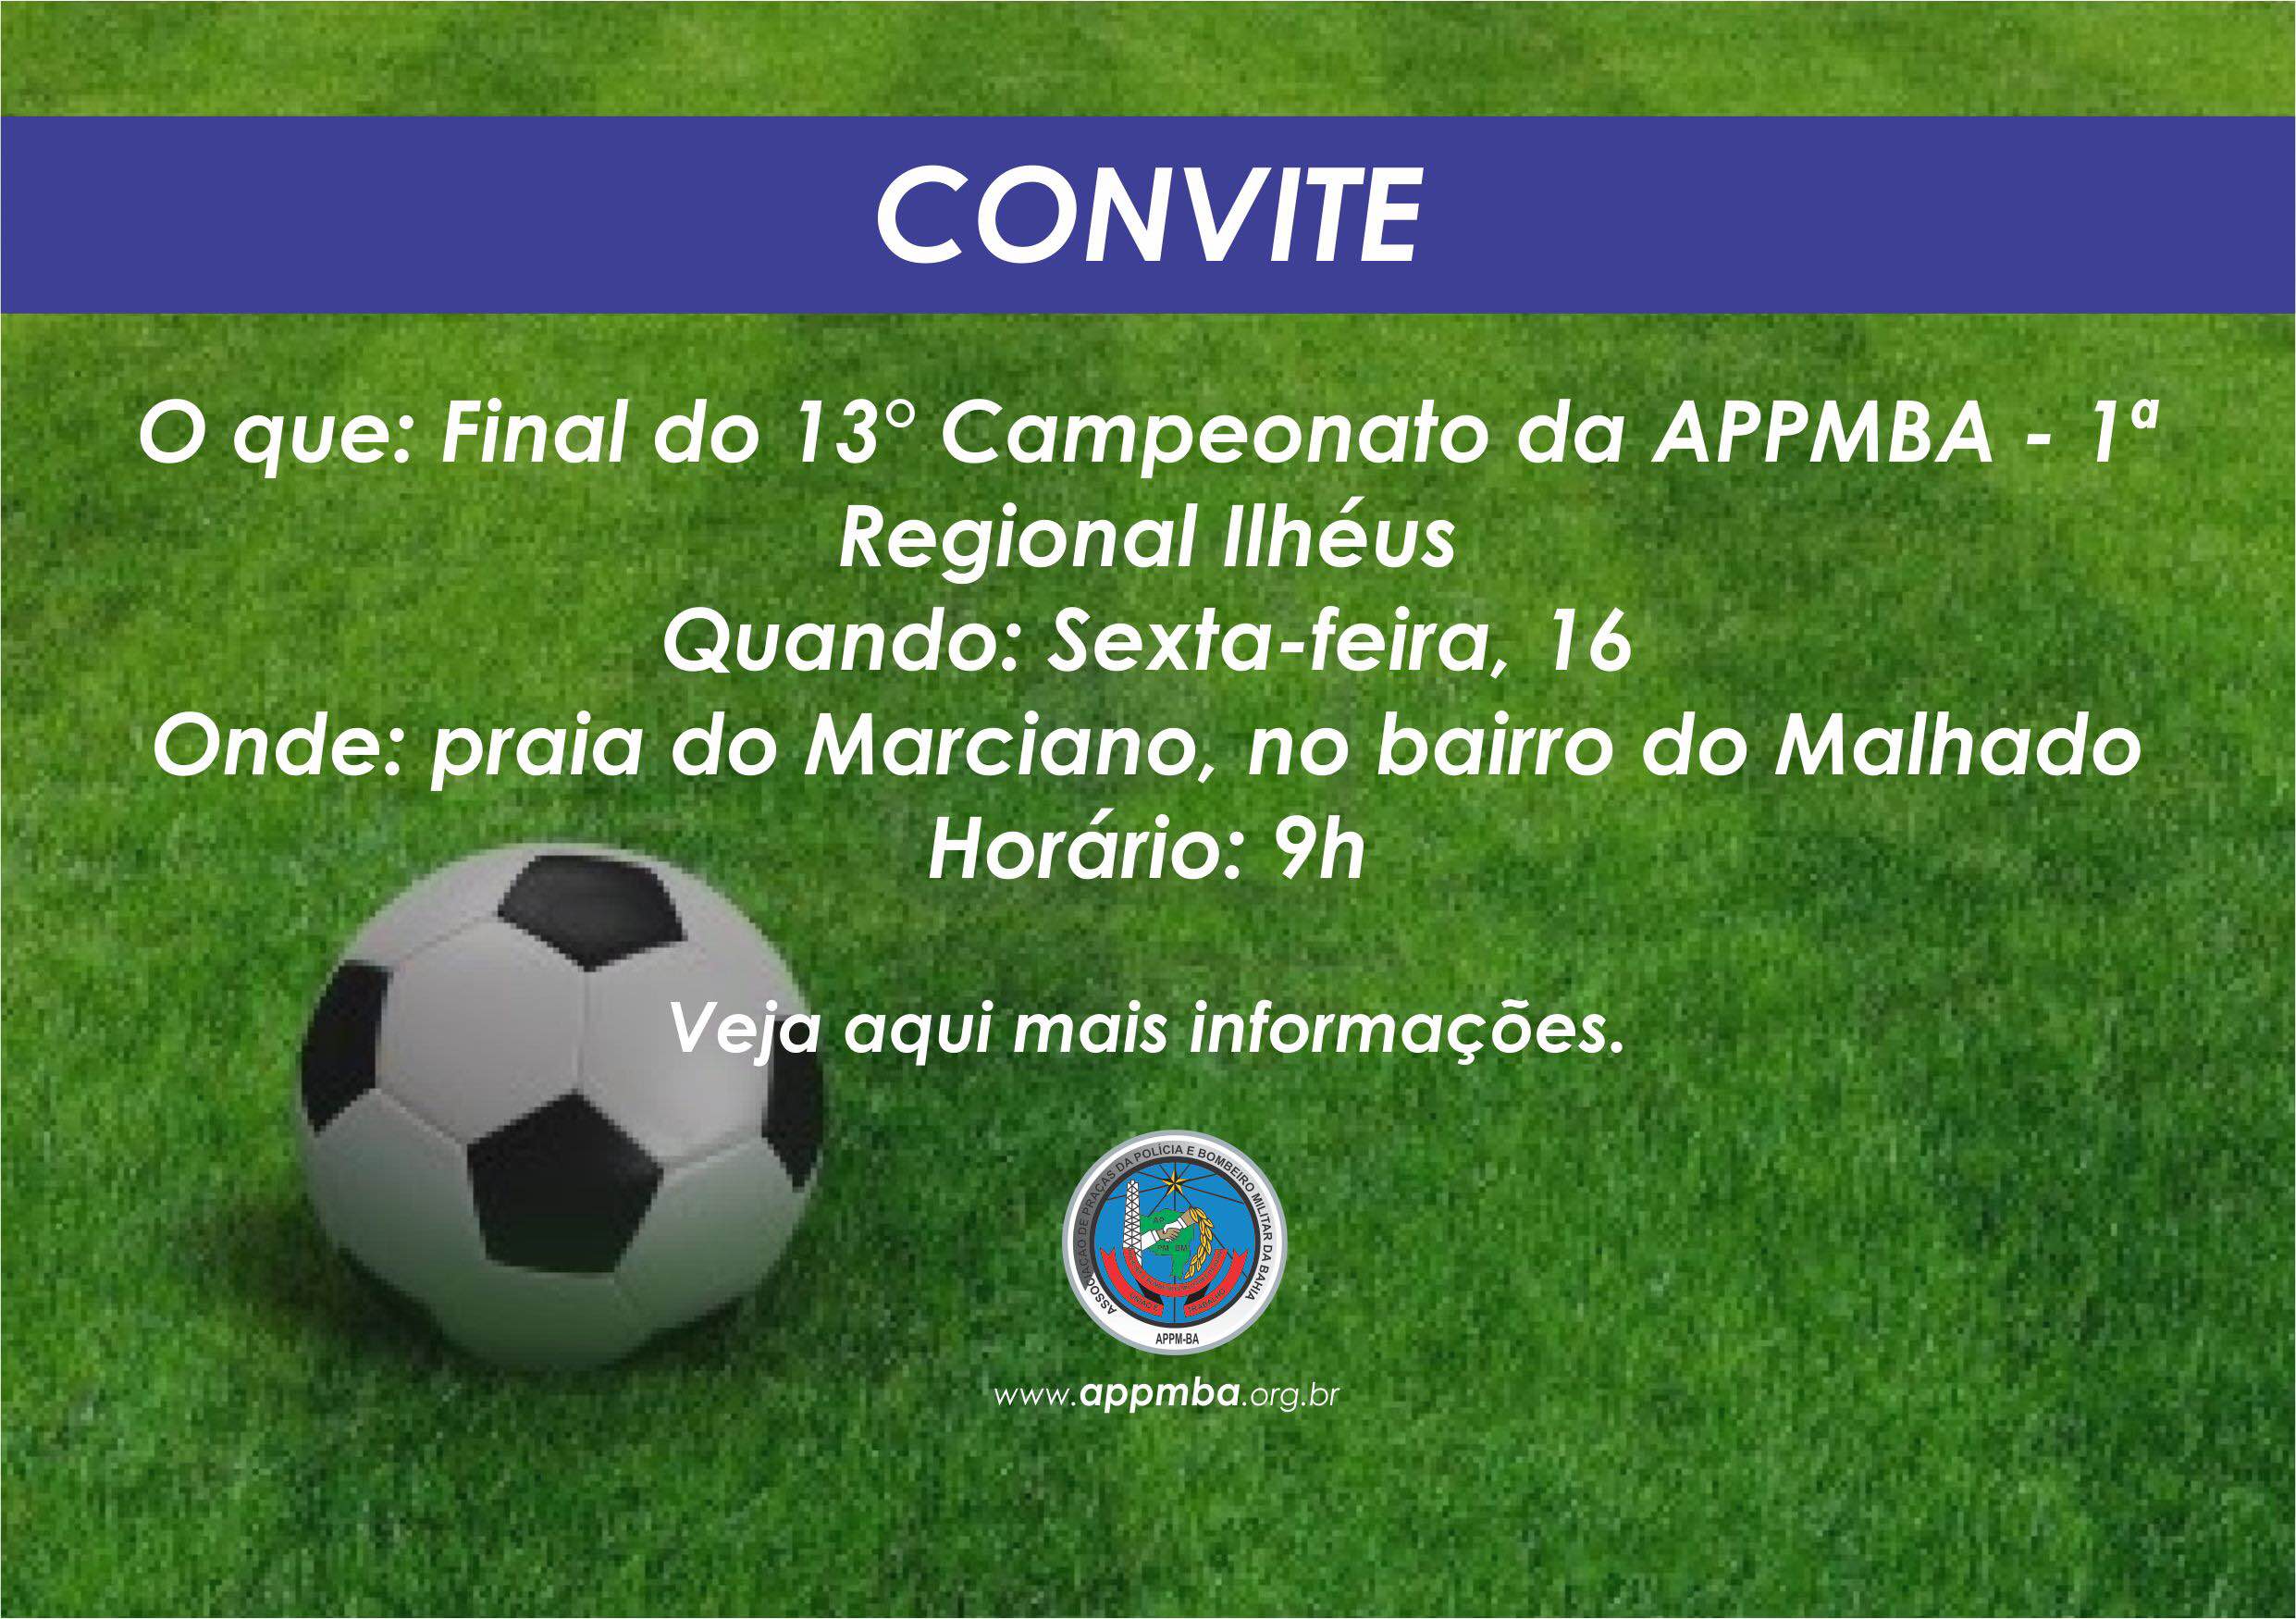 APPMBA convida associados para a partida final do 13° Campeonato da 1ª Regional Ilhéus